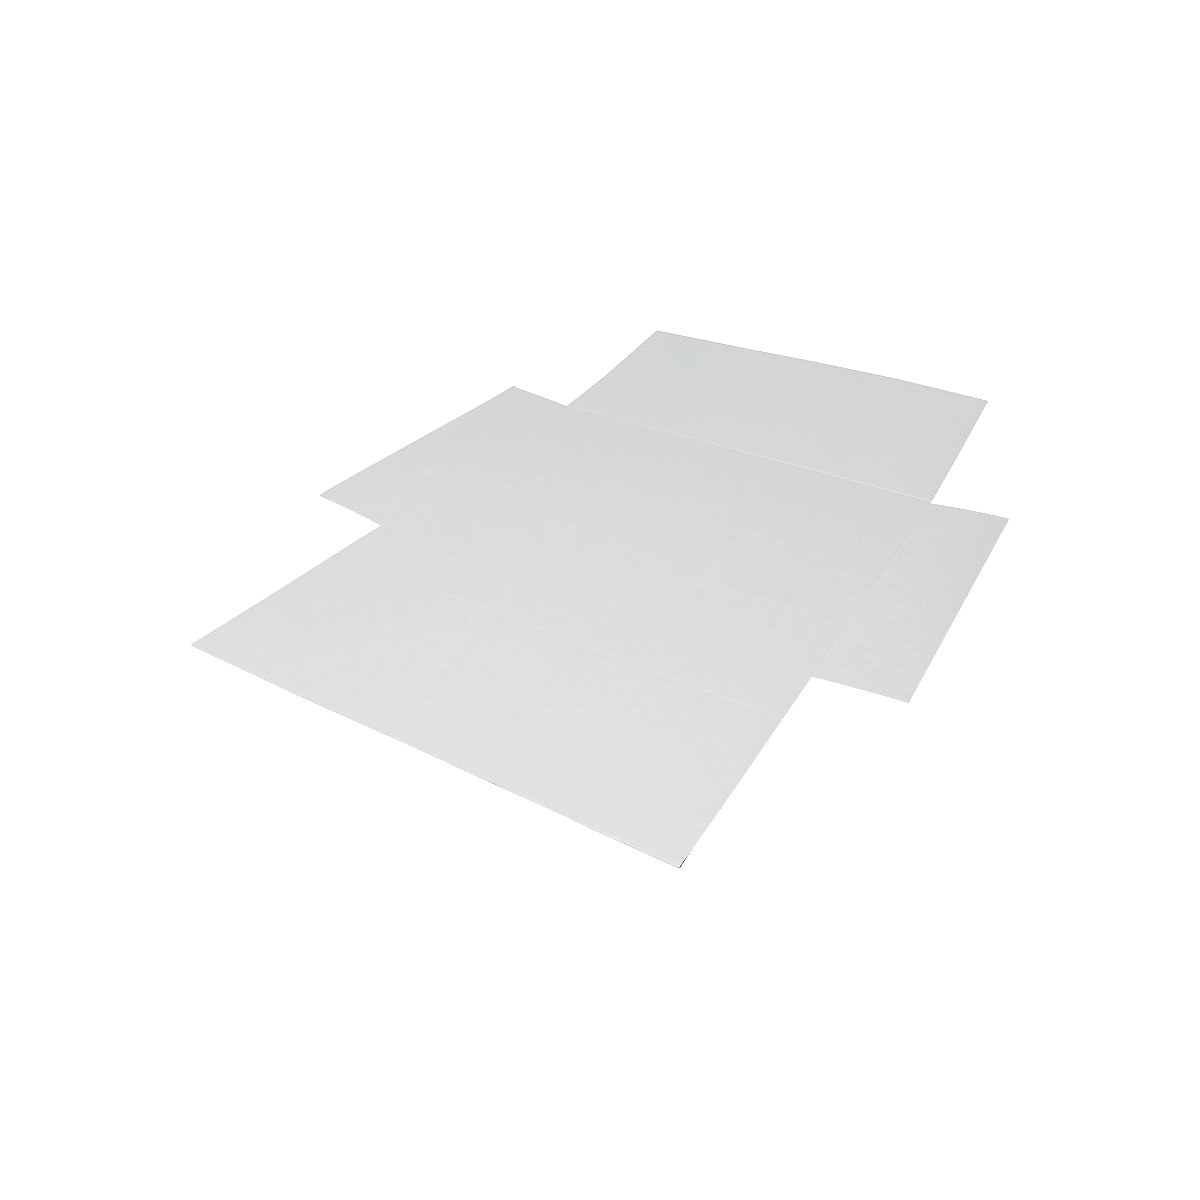 Imballaggio incrociato, in pezzo unico, a 1 parete, bianco, lungh. x largh. 843 x 596 mm, altezza di riempimento 100 mm, a partire da 8 pz.-7